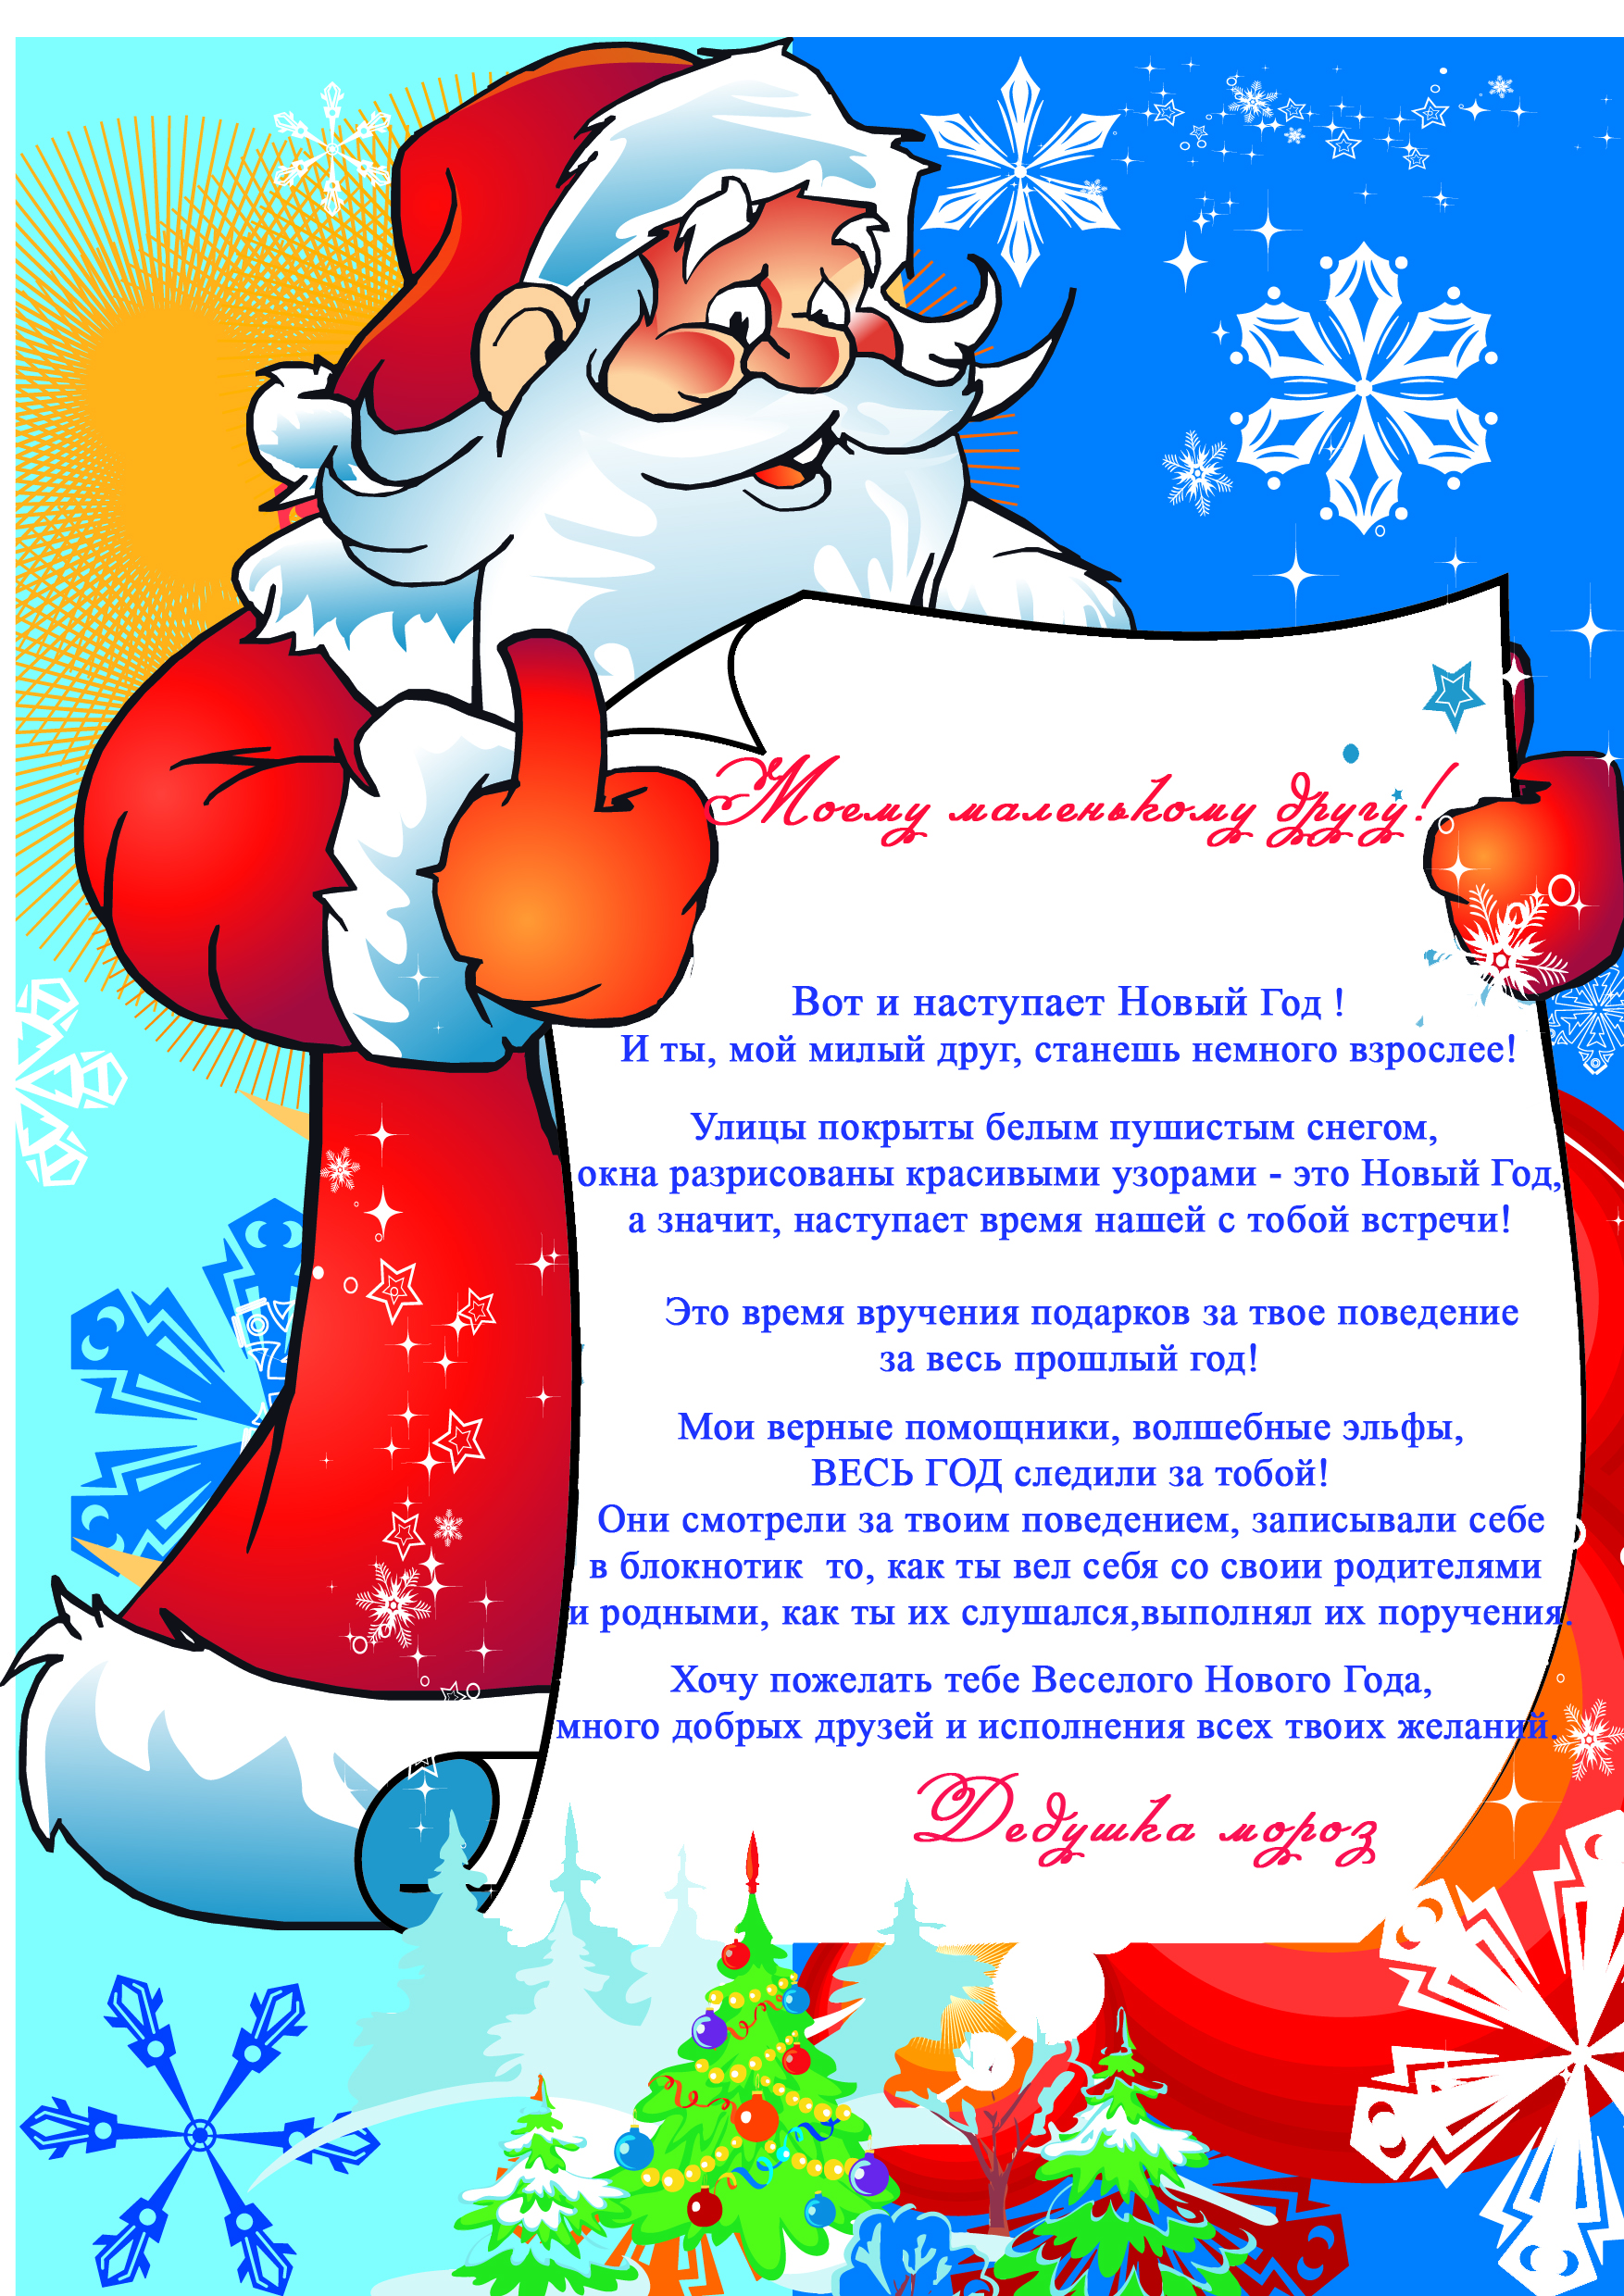 Дед мороз поздравит. Письмо от Деда Мороза. Поздравление Деда Мороза. Поздравление от Деда Мороза. Поздравление от Деда Мороза для ребенка.